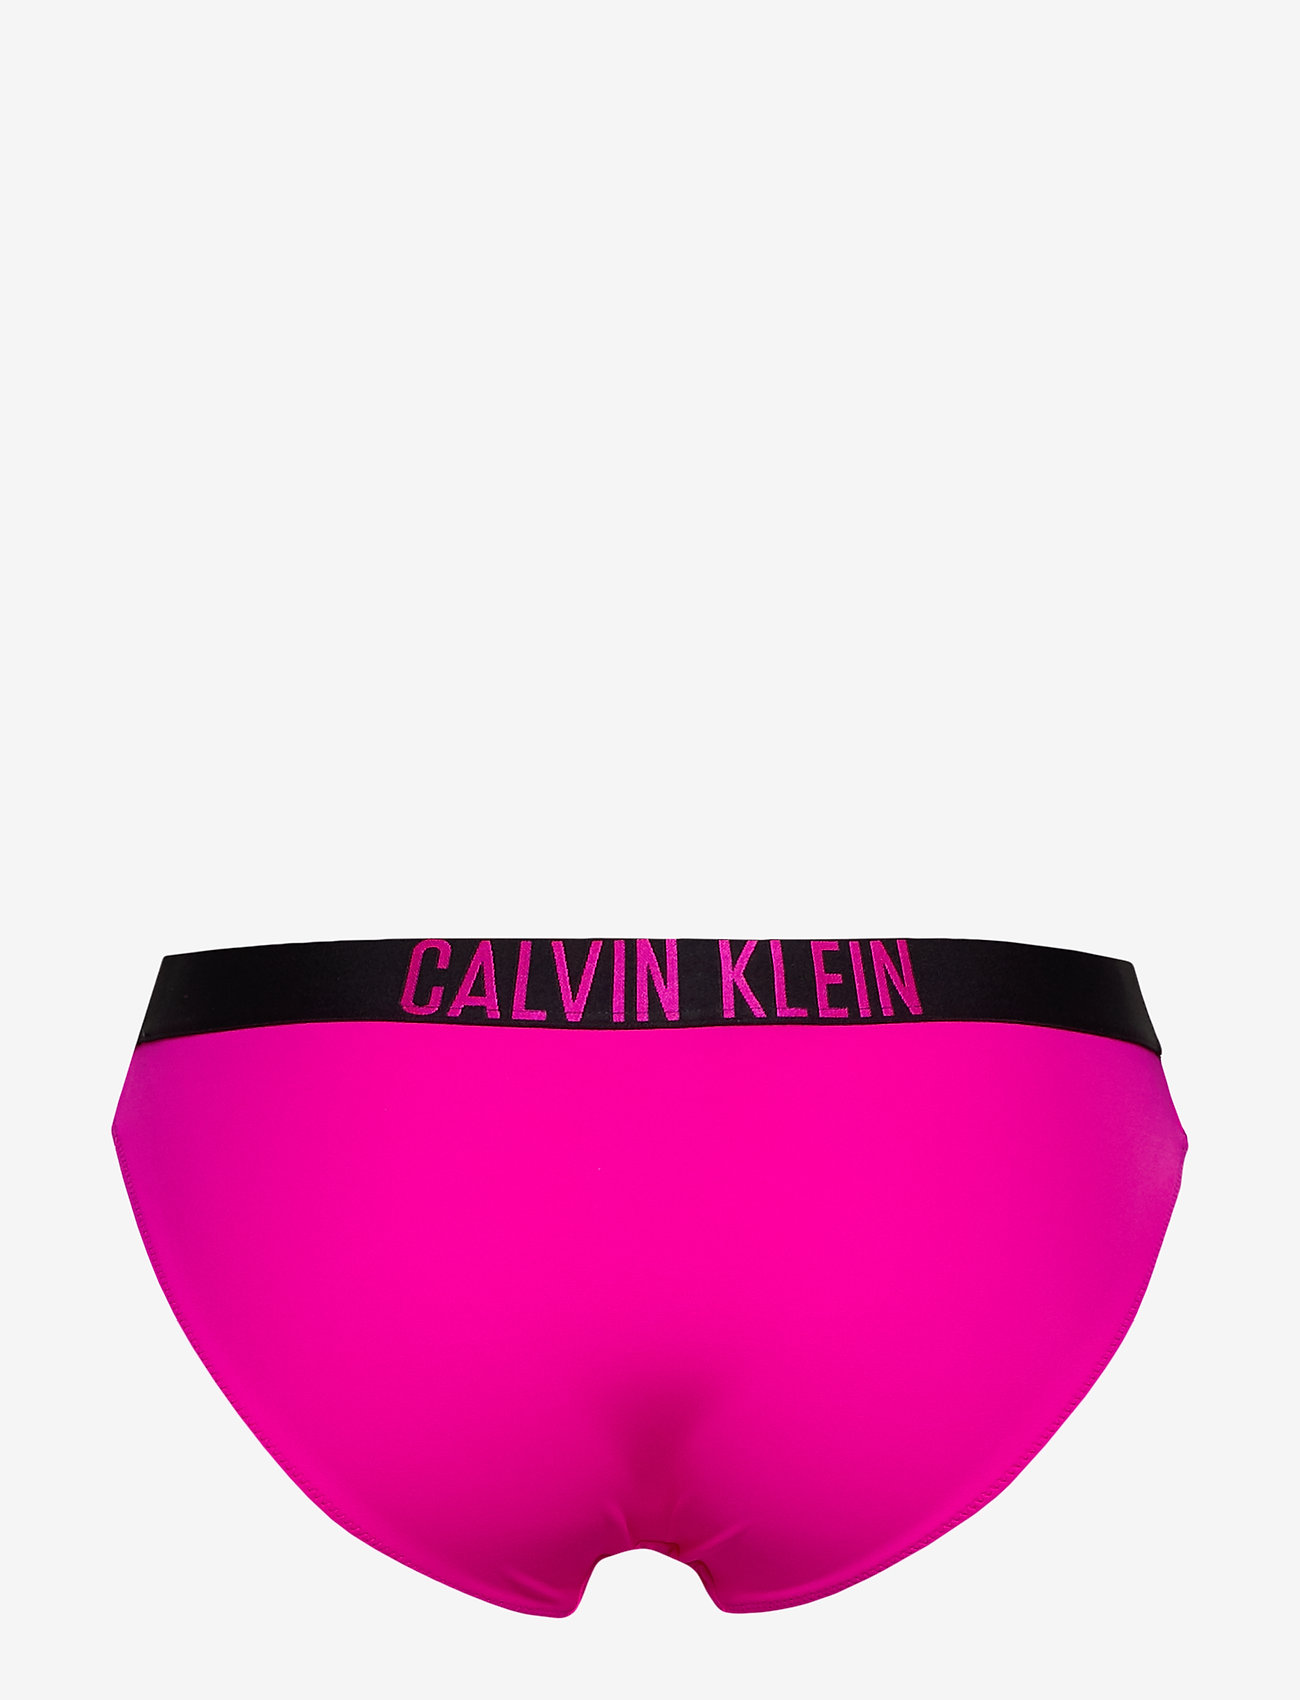 calvin klein pink bikini